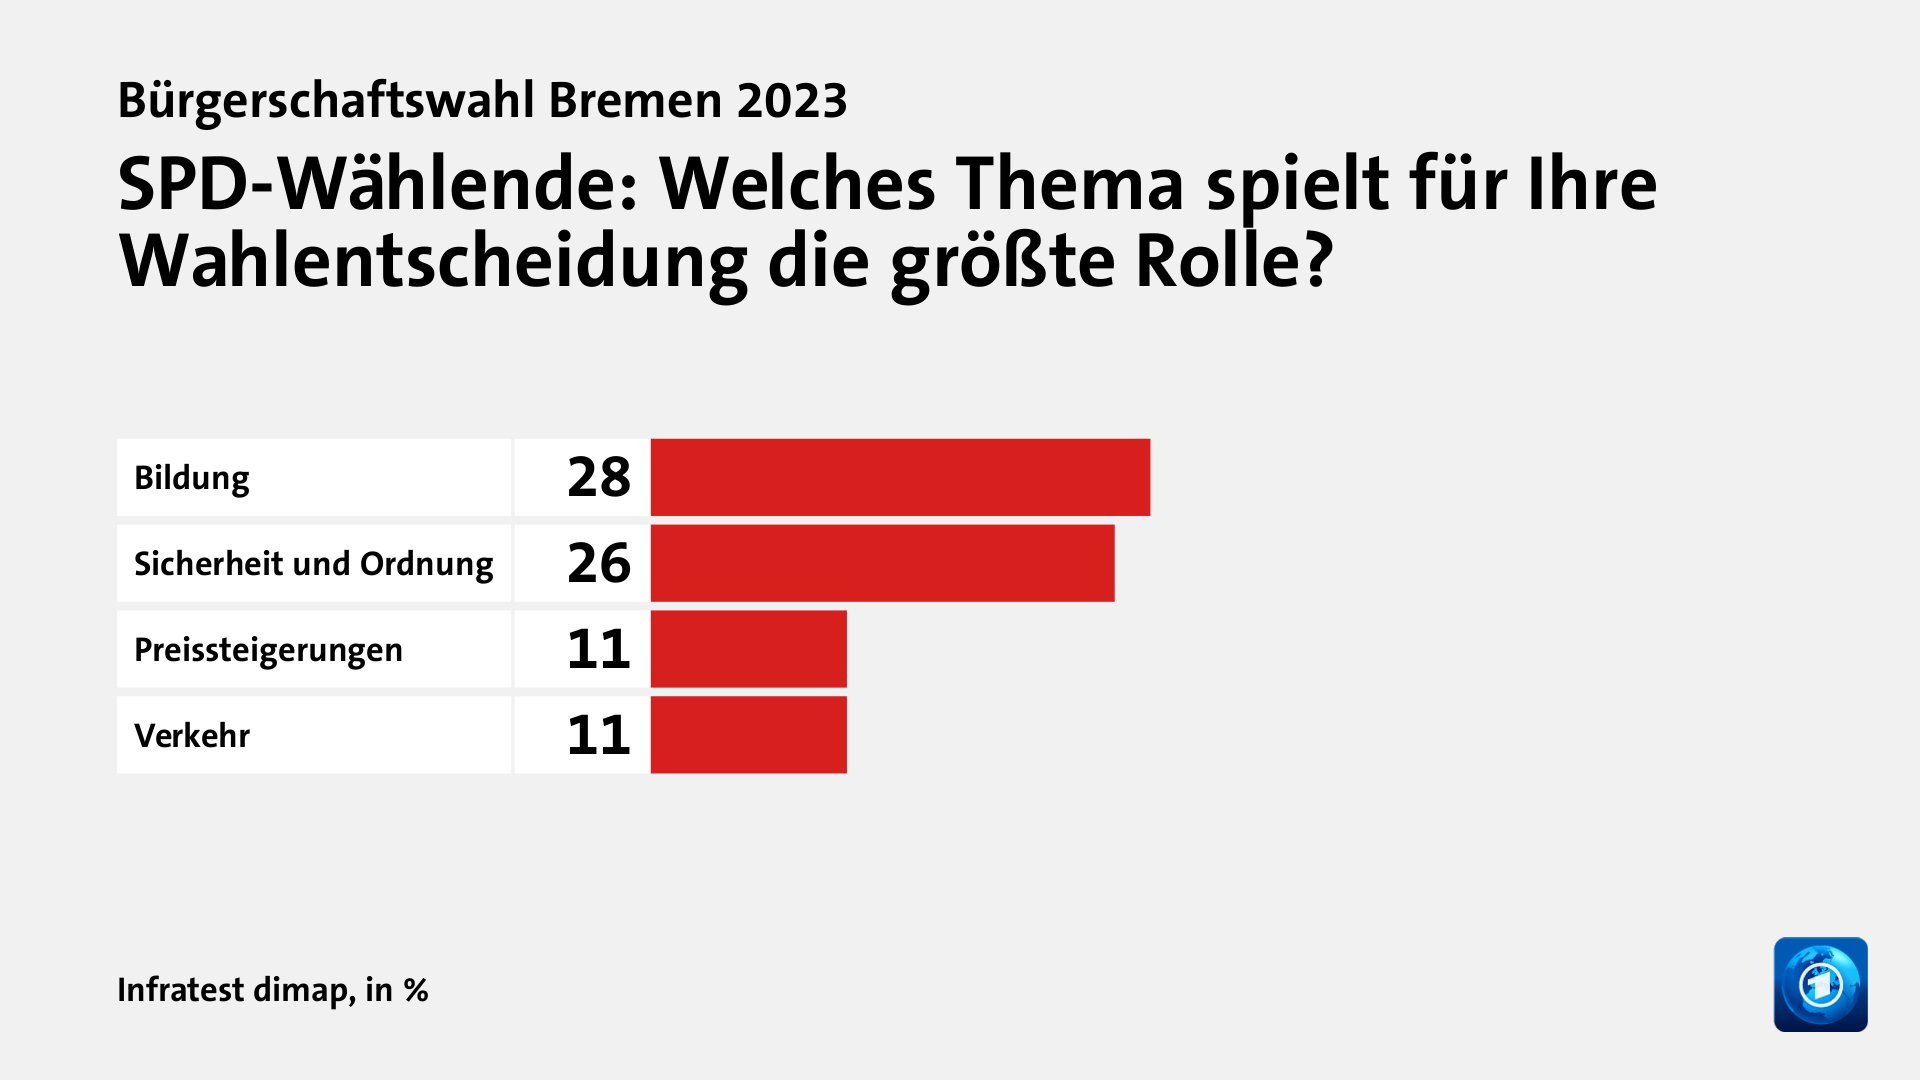 SPD-Wählende: Welches Thema spielt für Ihre Wahlentscheidung die größte Rolle?, in %: Bildung 28, Sicherheit und Ordnung  26, Preissteigerungen 11, Verkehr 11, Quelle: Infratest dimap